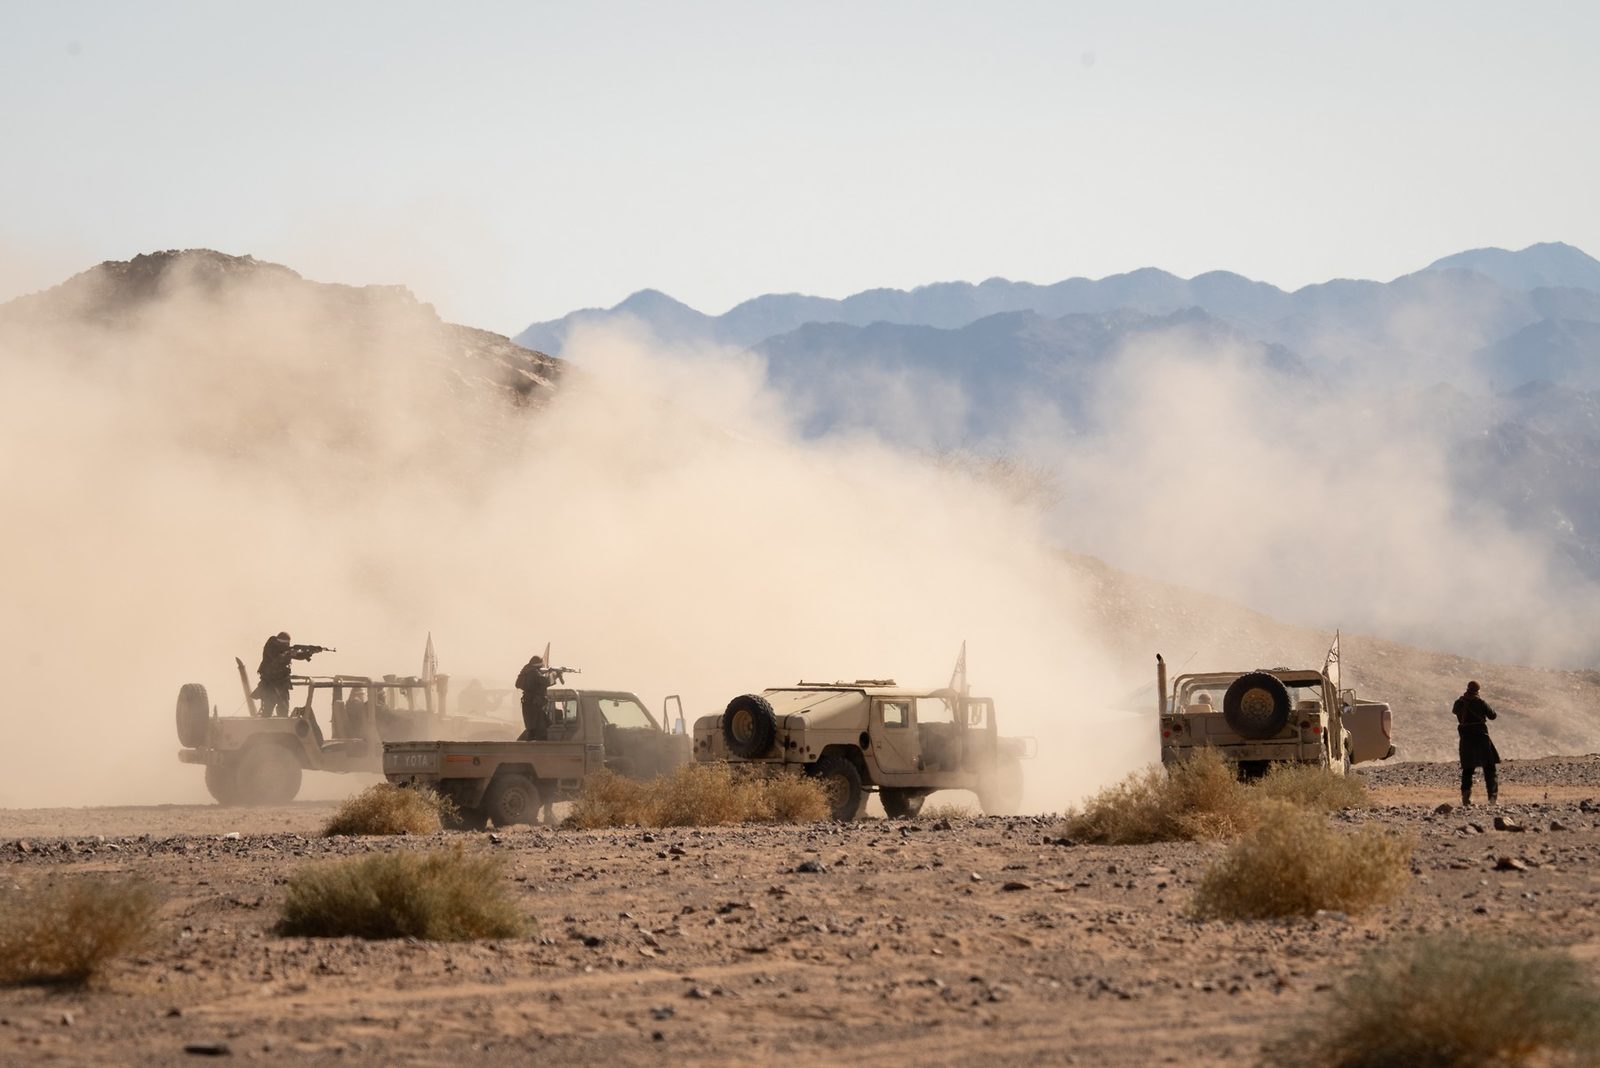 Джерард Батлер мчит по пустыне под обстрелом в эксклюзивном отрывке из фильма «Беглец»